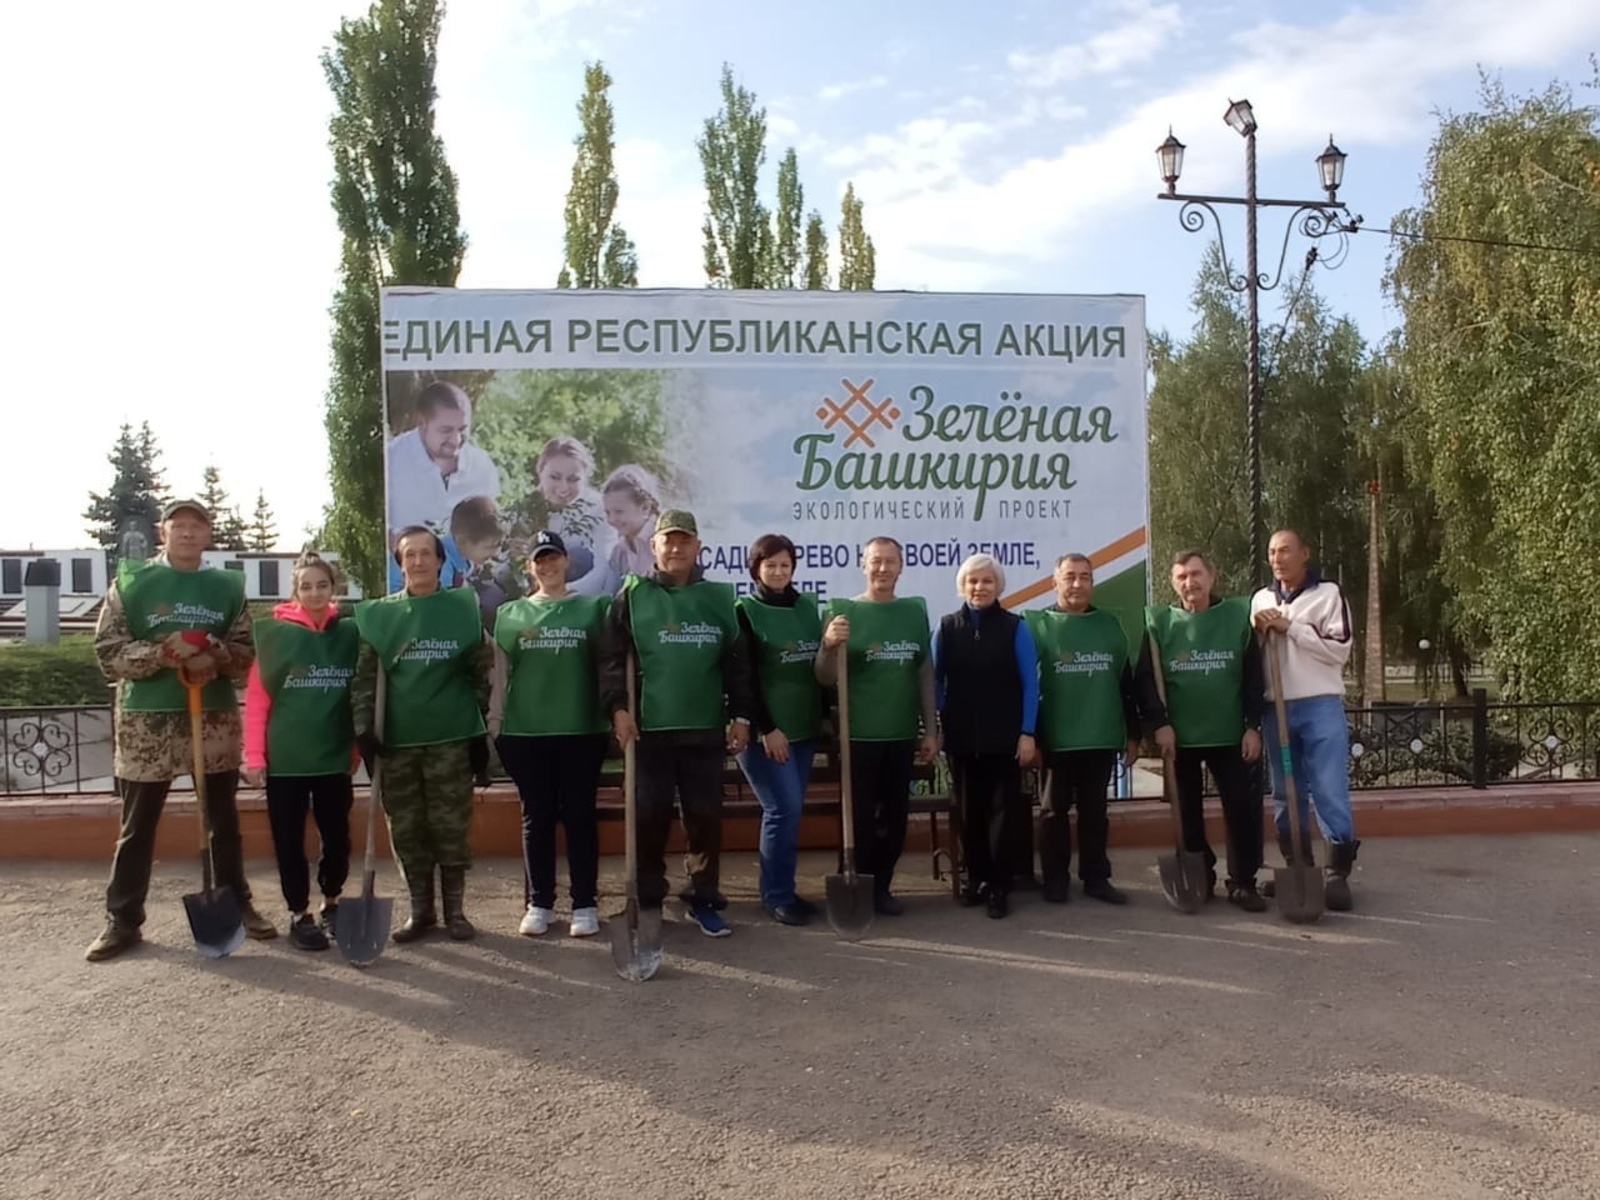 Федоровский район Республики Башкортостана присоединился к республиканской экологической акции «Зеленая Башкирия»